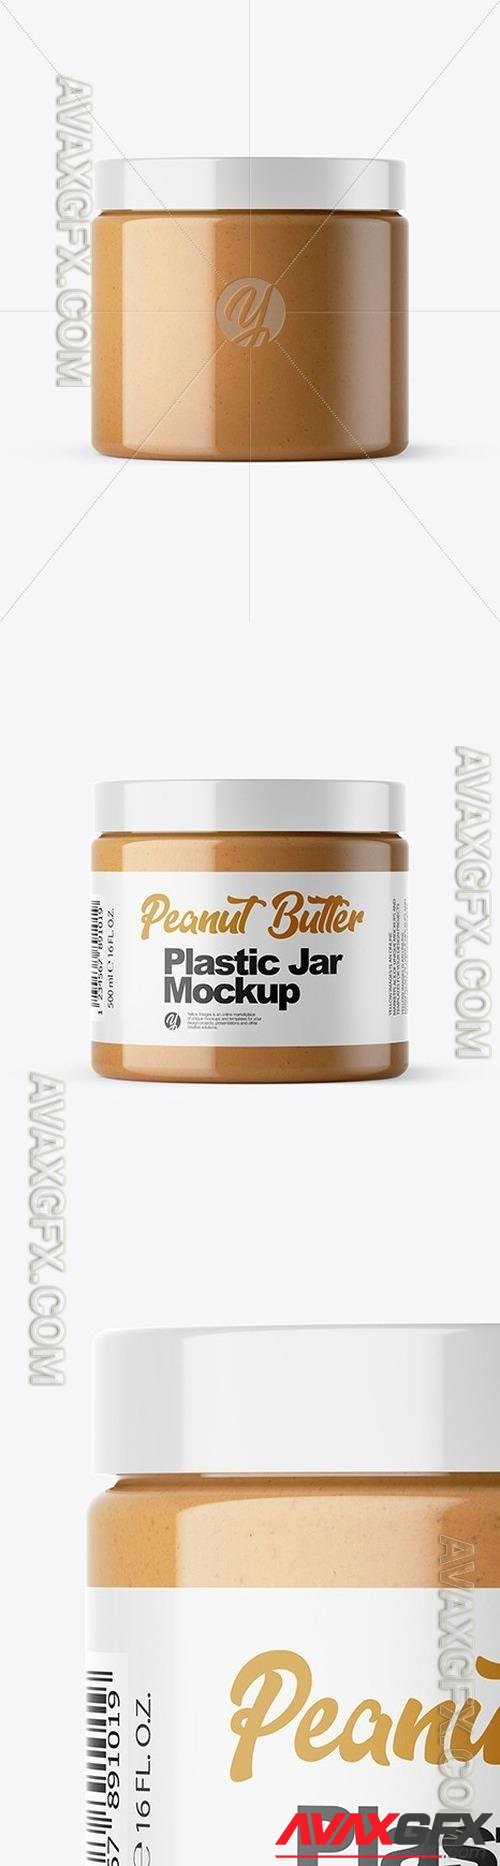 Peanut Butter Jar Mockup 46833 TIF